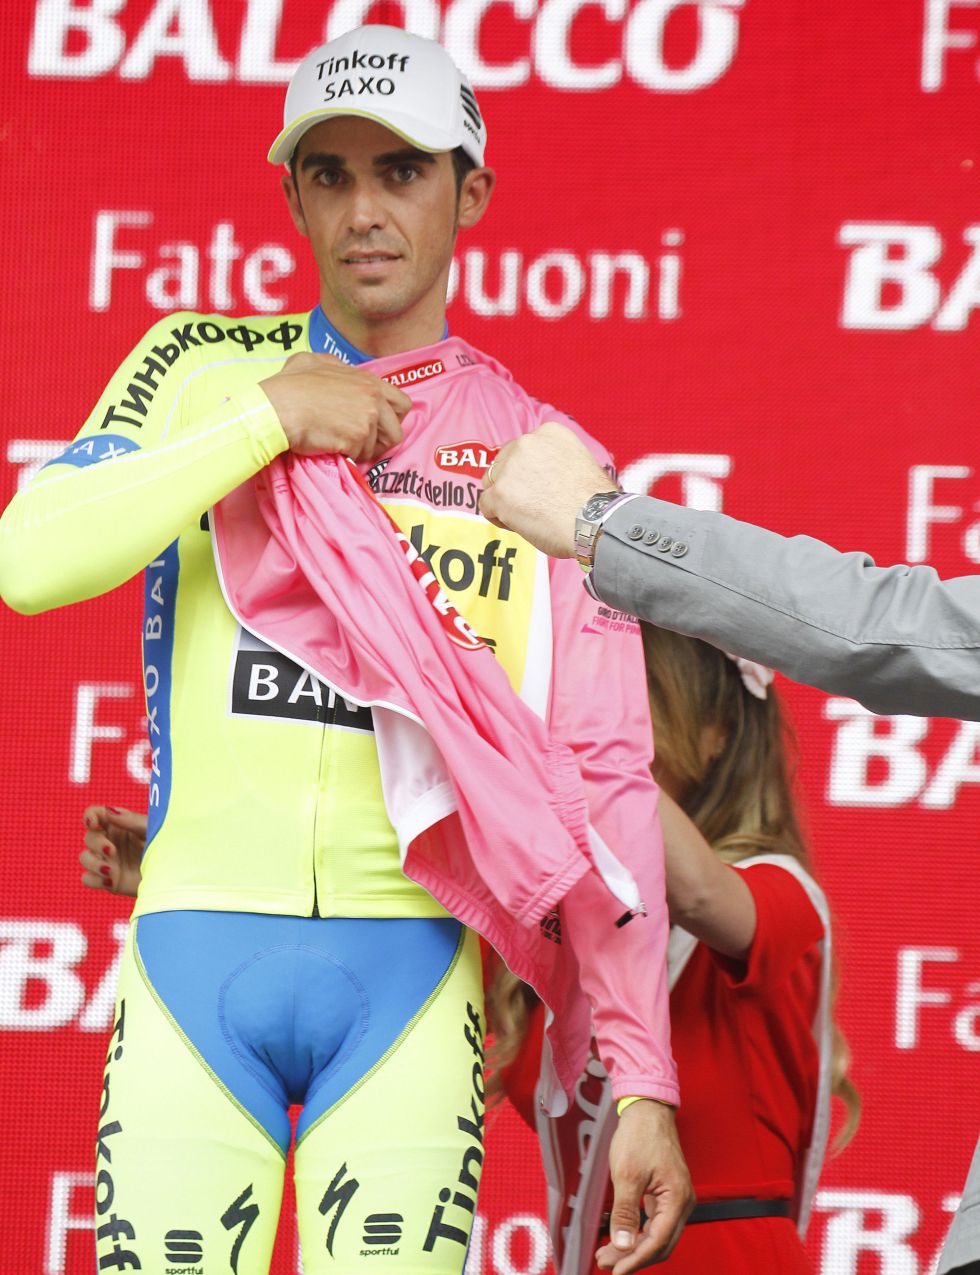 Giro de Italia 2015 - Página 2 1431708924_221177_1431709105_noticia_grande